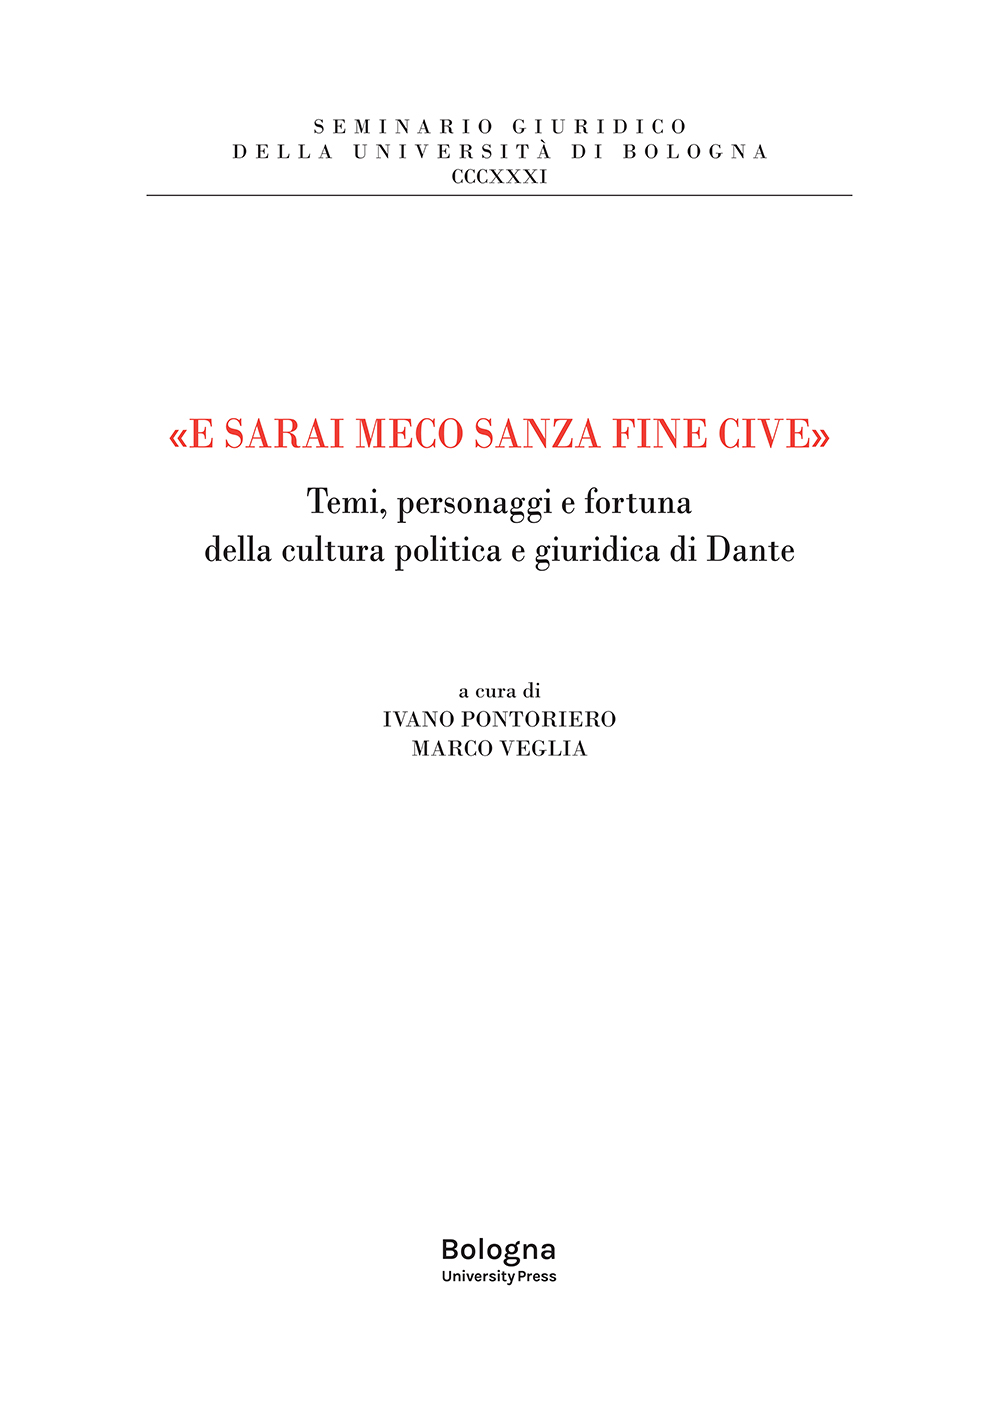 «E sarai meco sanza fine cive» - Bologna University Press